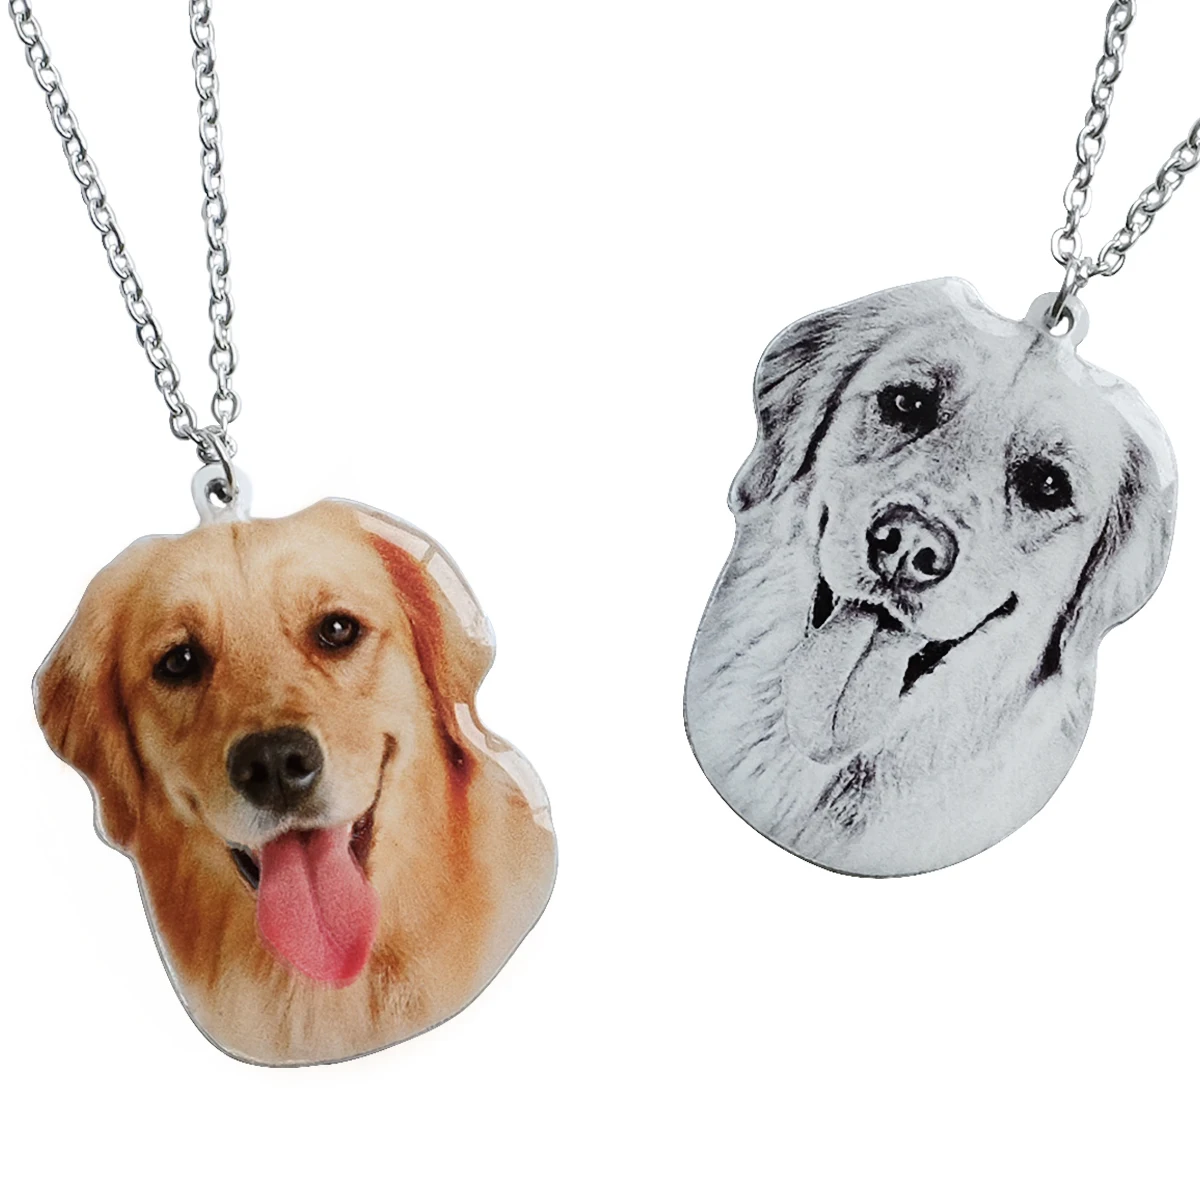 Изготовленный на заказ для фото, ожерелье животное ожерелье портрет персонализированные кошка собака памяти ювелирные изделия фото кулон ...